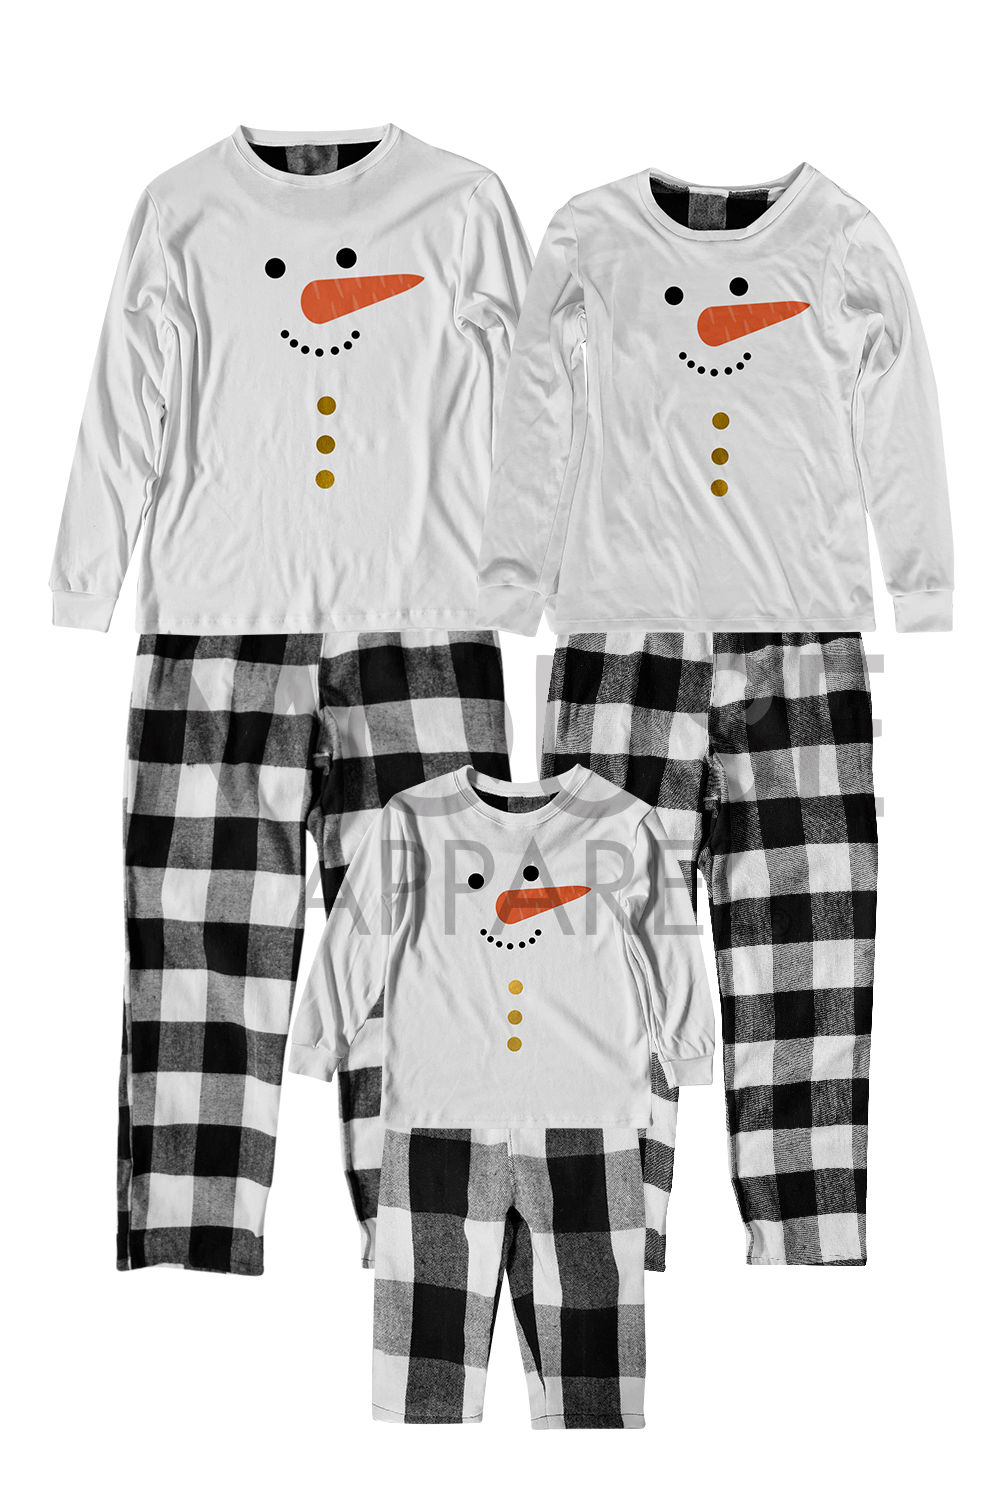 Pijama Franela 2 a 10 Años. Muñeco de Nieve